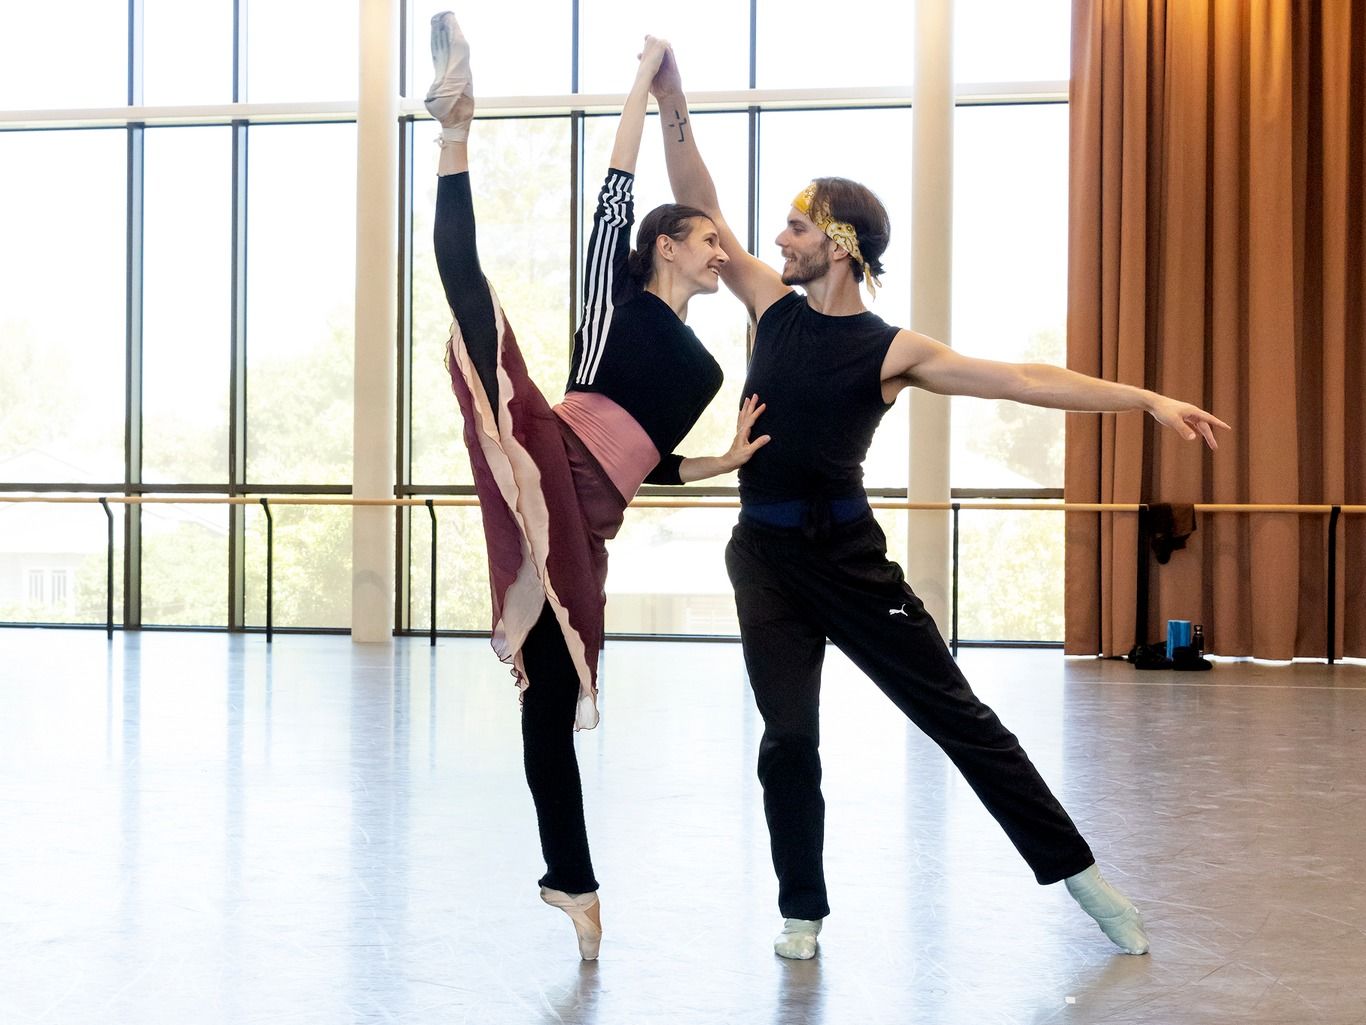 International Ballet Star Alina Cojocaru begins rehearsals